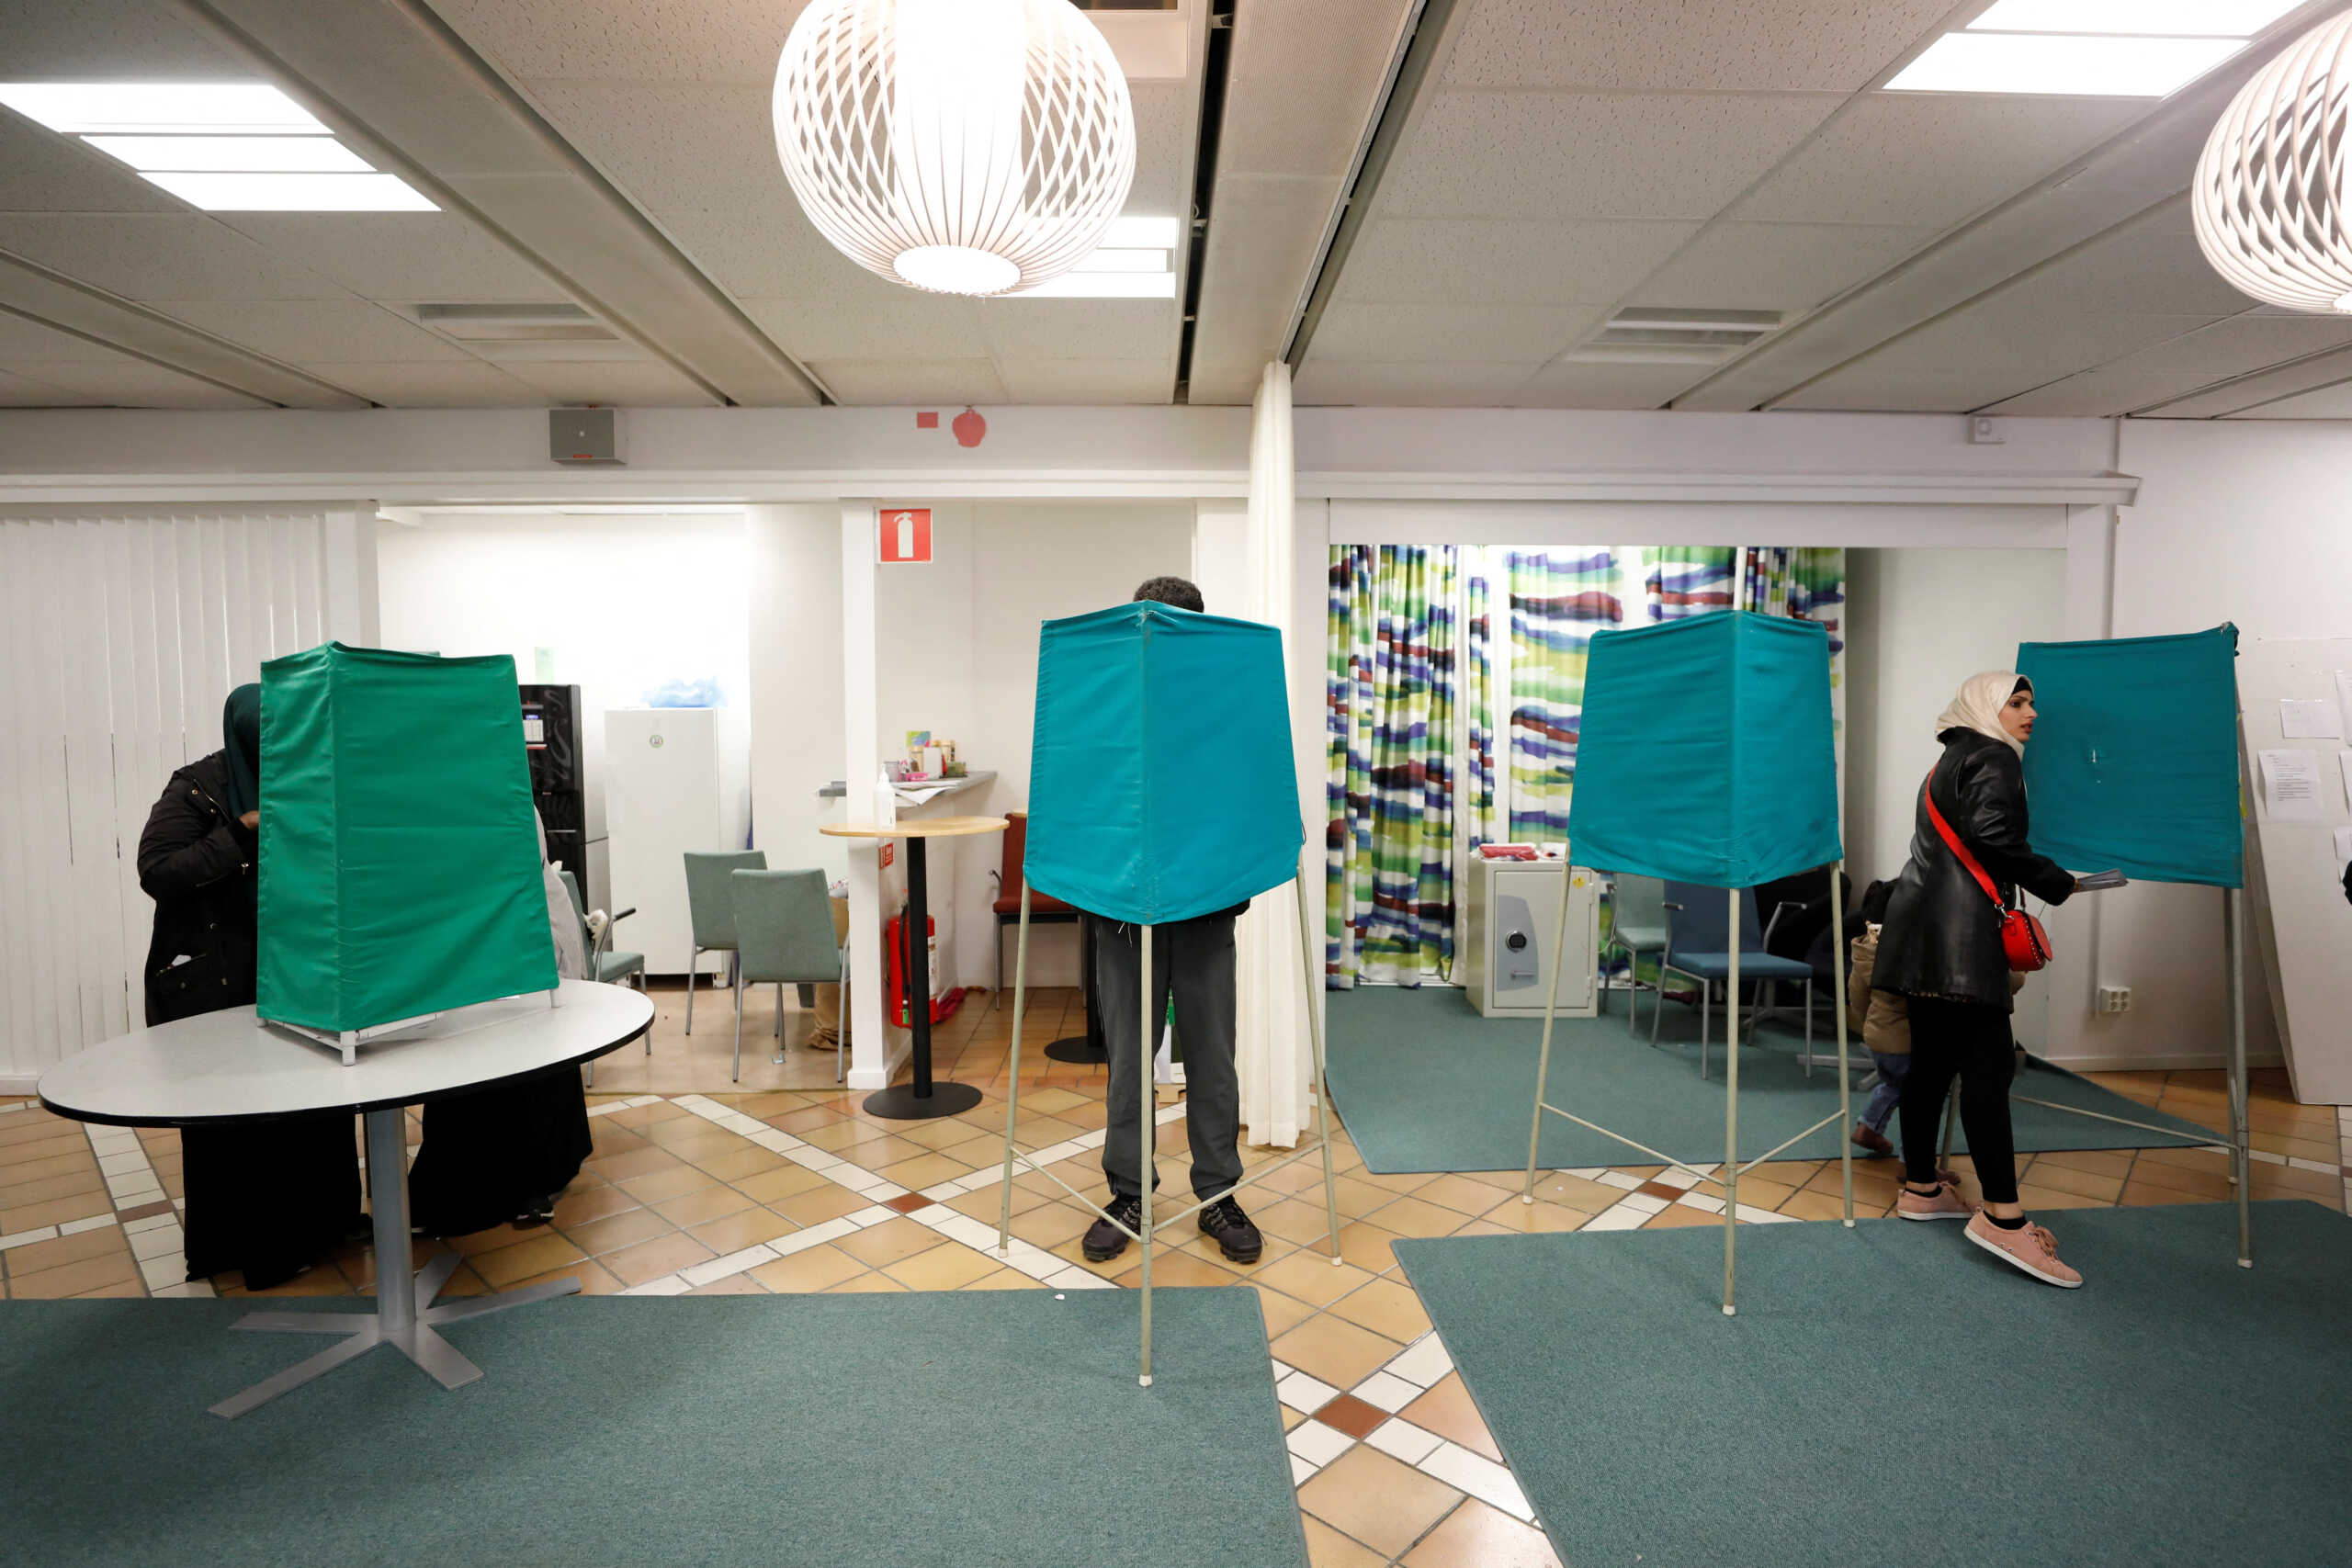 Βουλευτικές εκλογές στη Σουηδία: Σήμερα ψηφίζουν οι πολίτες σε μια αμφίρροπη εκλογική μάχη